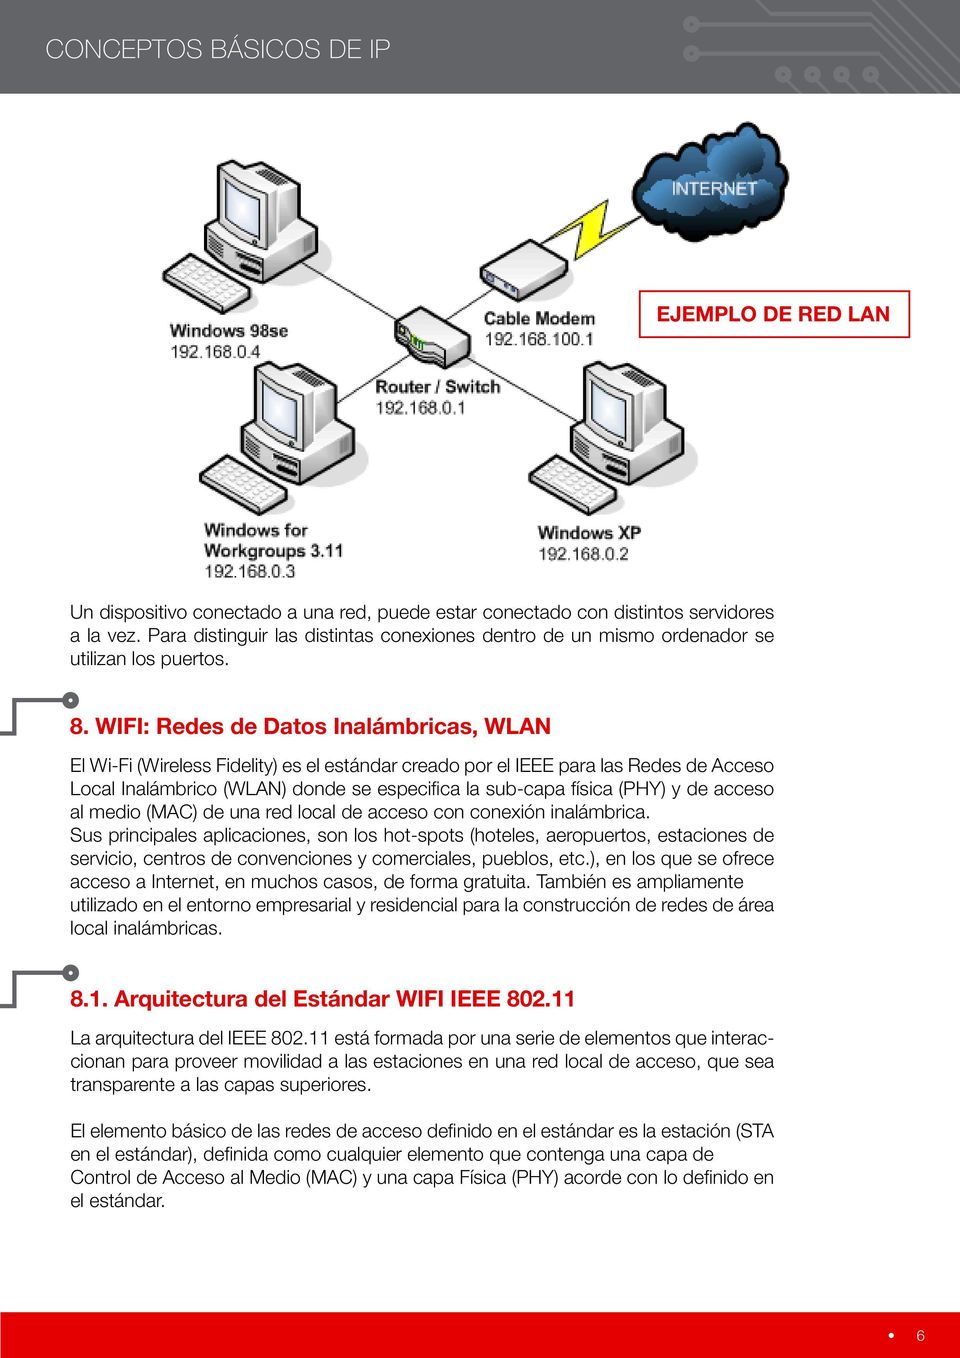 WIFI: Redes de Datos Inalámbricas, WLAN El Wi-Fi (Wireless Fidelity) es el estándar creado por el IEEE para las Redes de Acceso Local Inalámbrico (WLAN) donde se especifica la sub-capa física (PHY) y